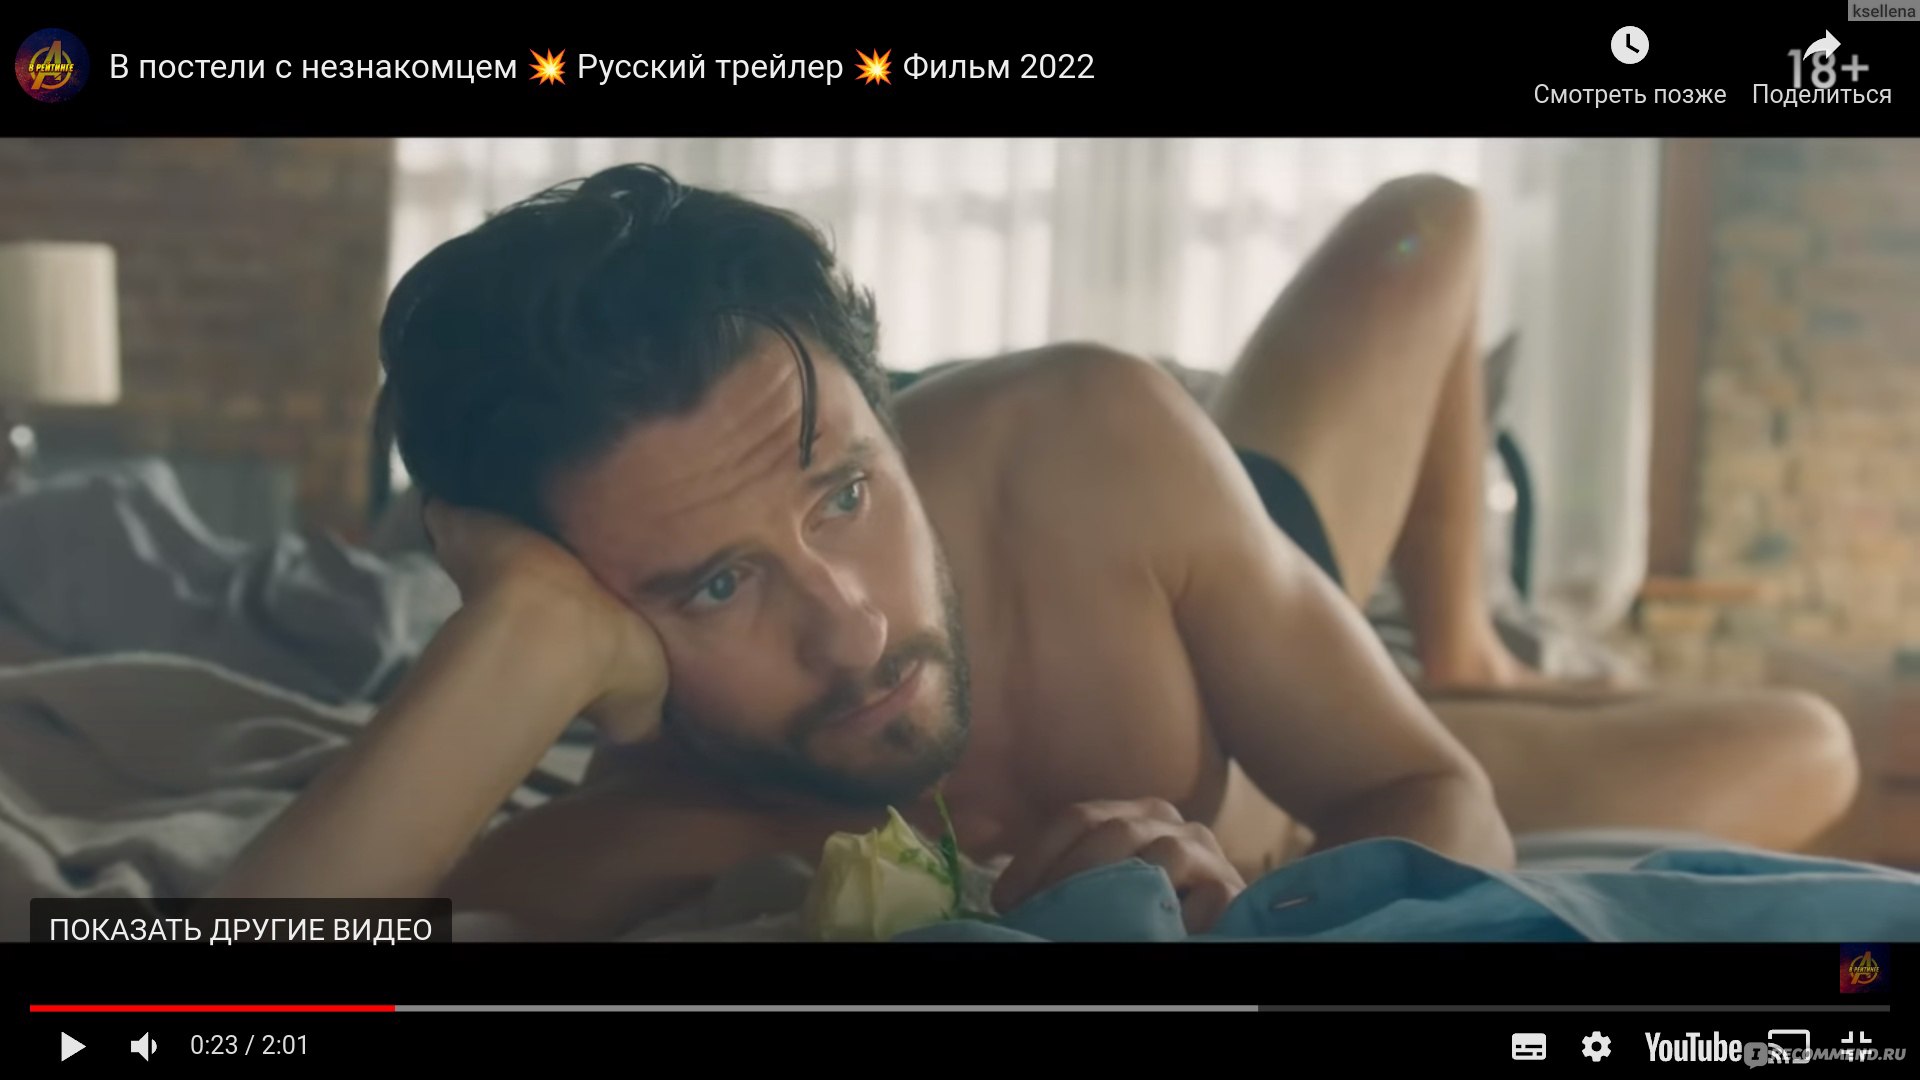 Секс и ничего лишнего () Трейлер русский — Video | VK